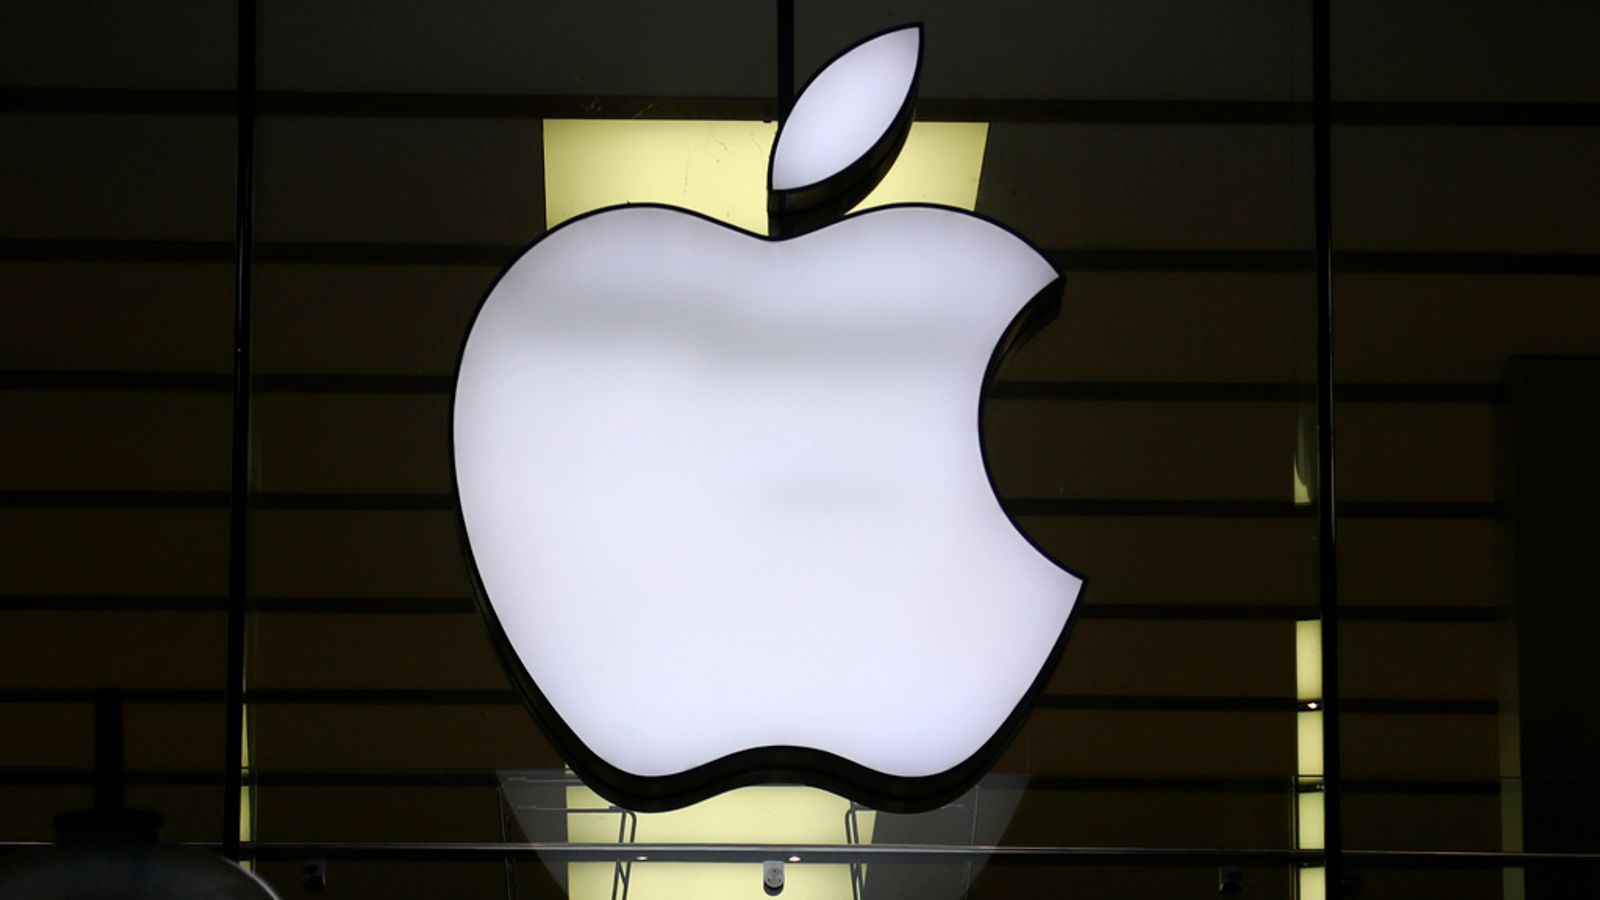 Apple Watch-Verbot: Technologieunternehmen befürchtet „irreparablen Schaden“, nachdem das Weiße Haus die Verkaufsaussetzung aufrechterhält |  Nachrichten aus Wissenschaft und Technik